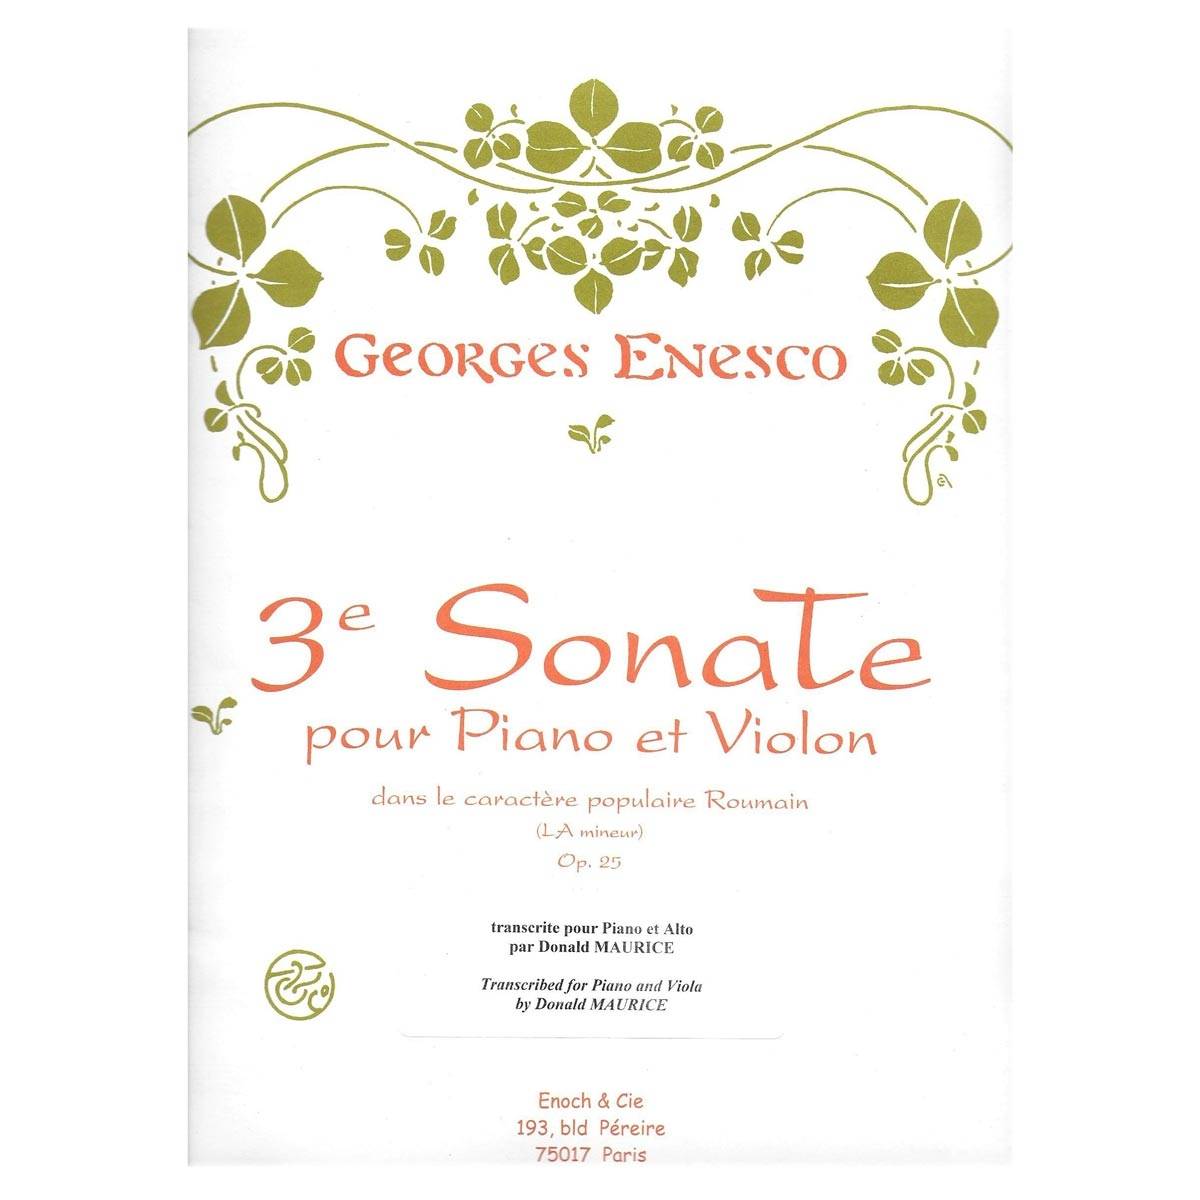 Enesco - Sonata In A Minor, Nr.3 Op.25